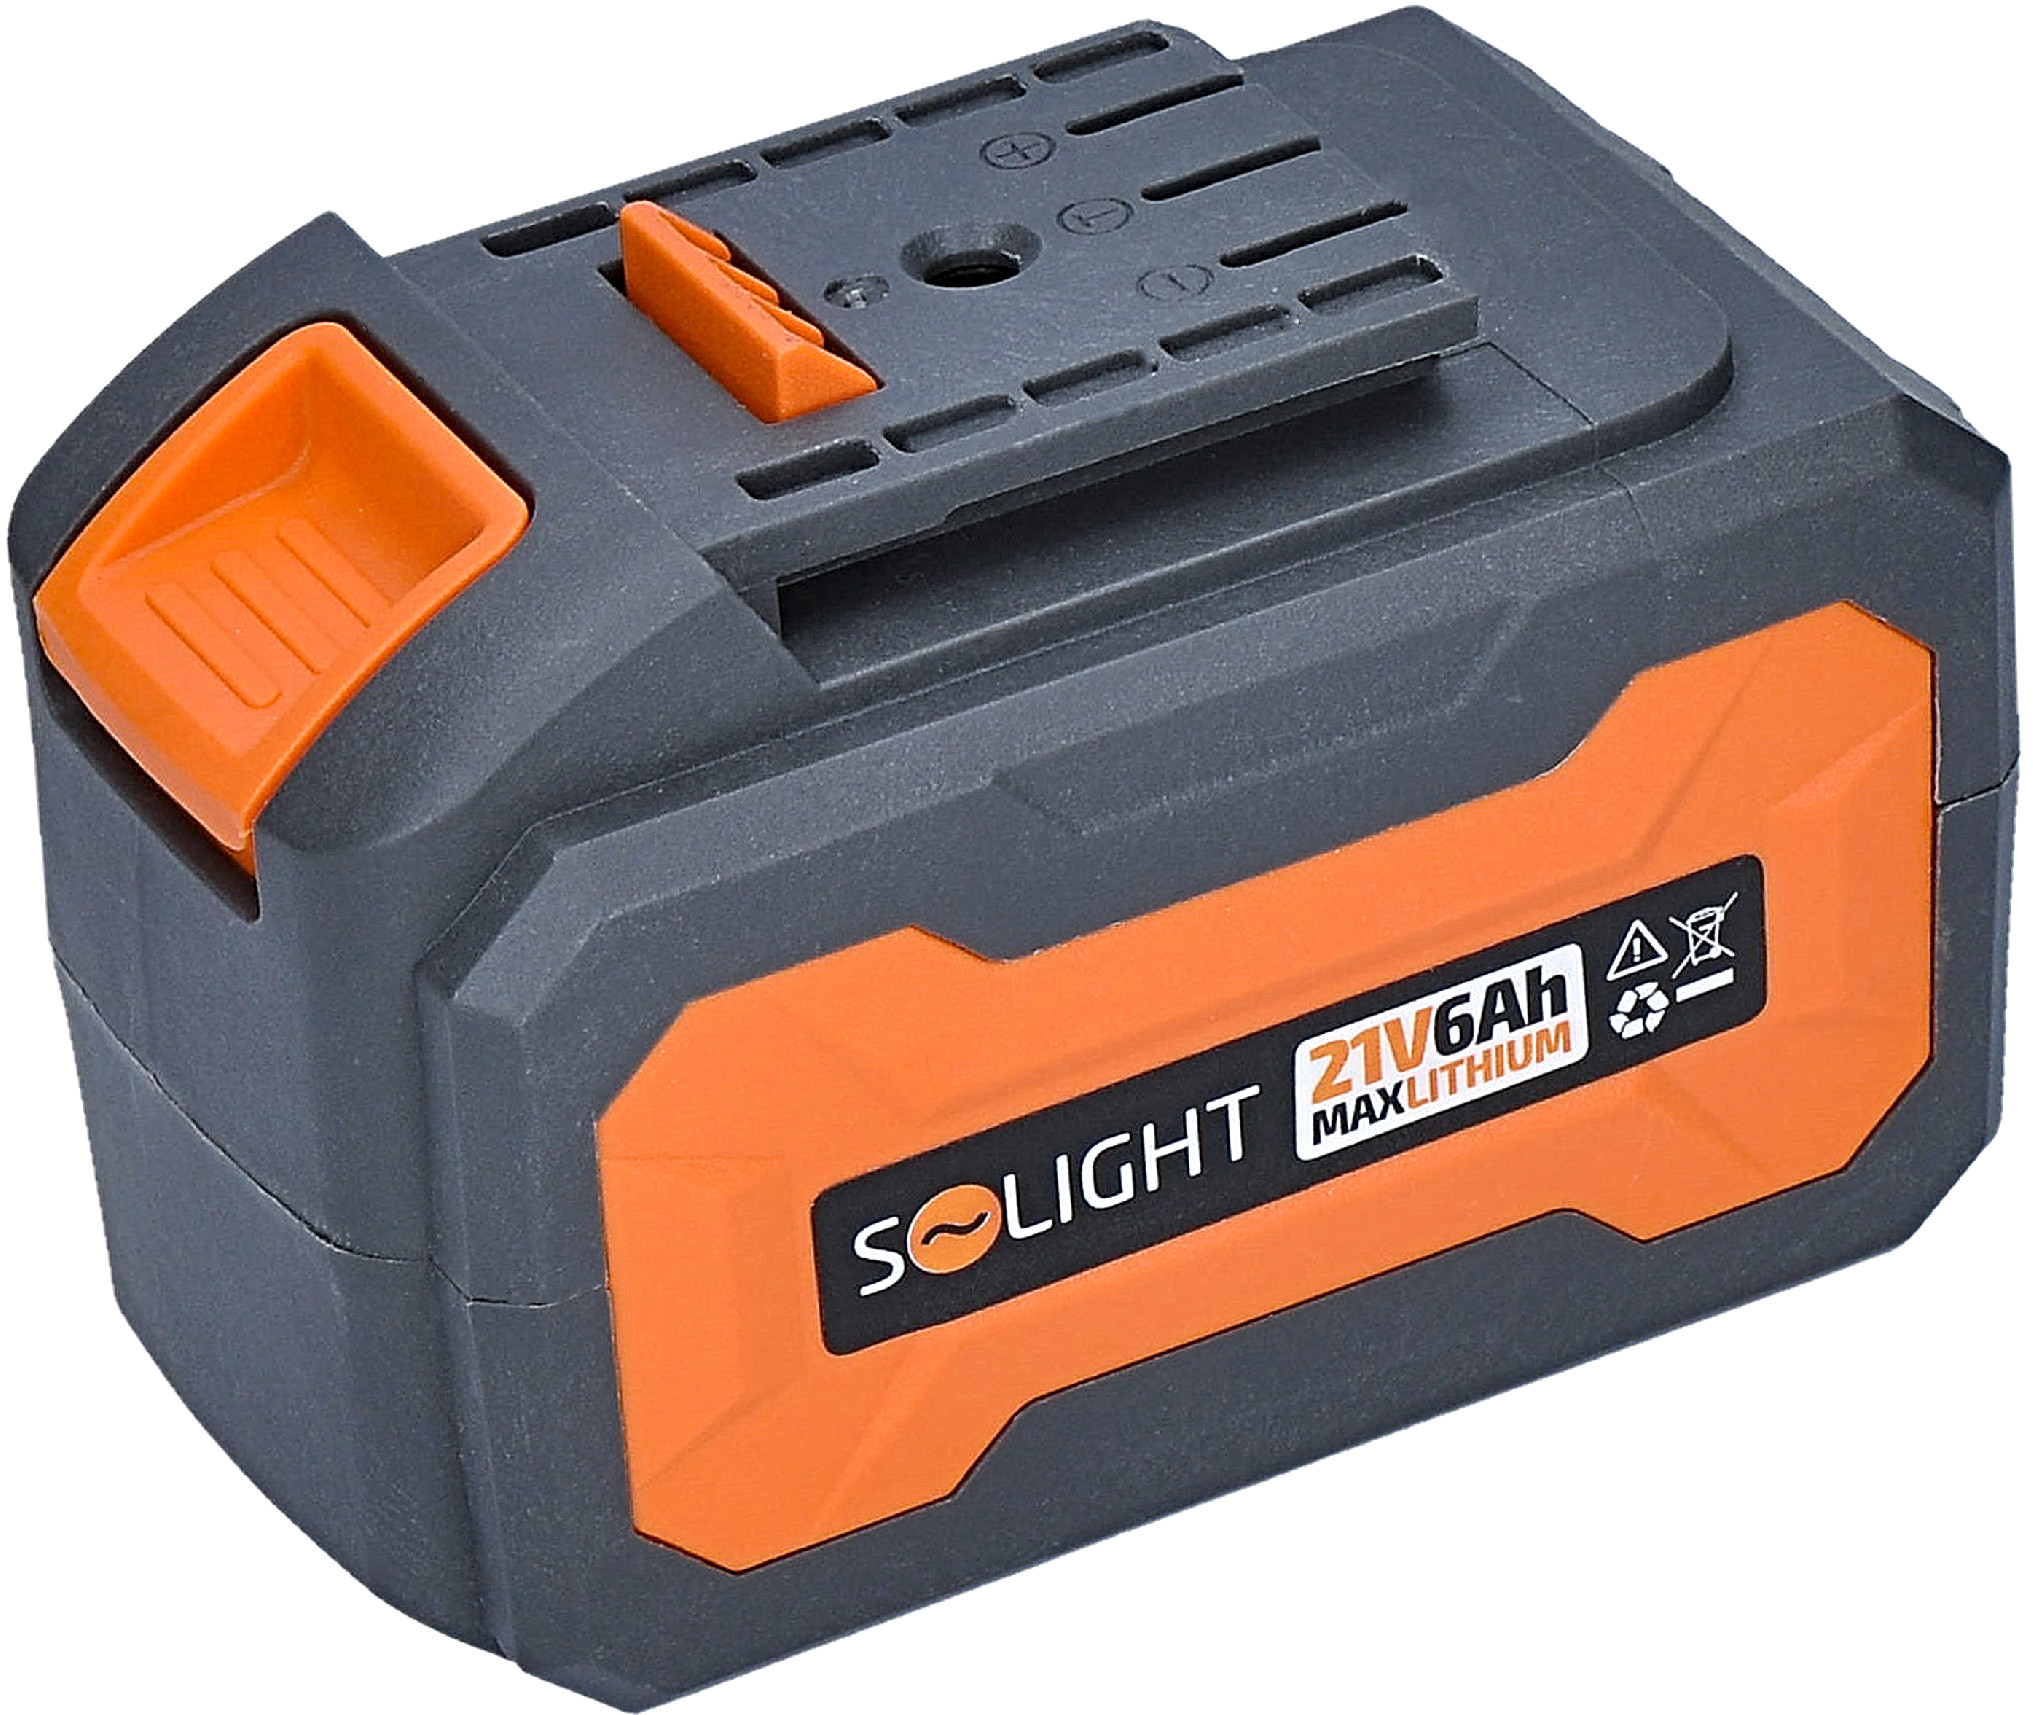 SOLIGHT RN-B6 akumulátorová baterie Li-Ion 21V 6Ah pro aku nářadi Solight